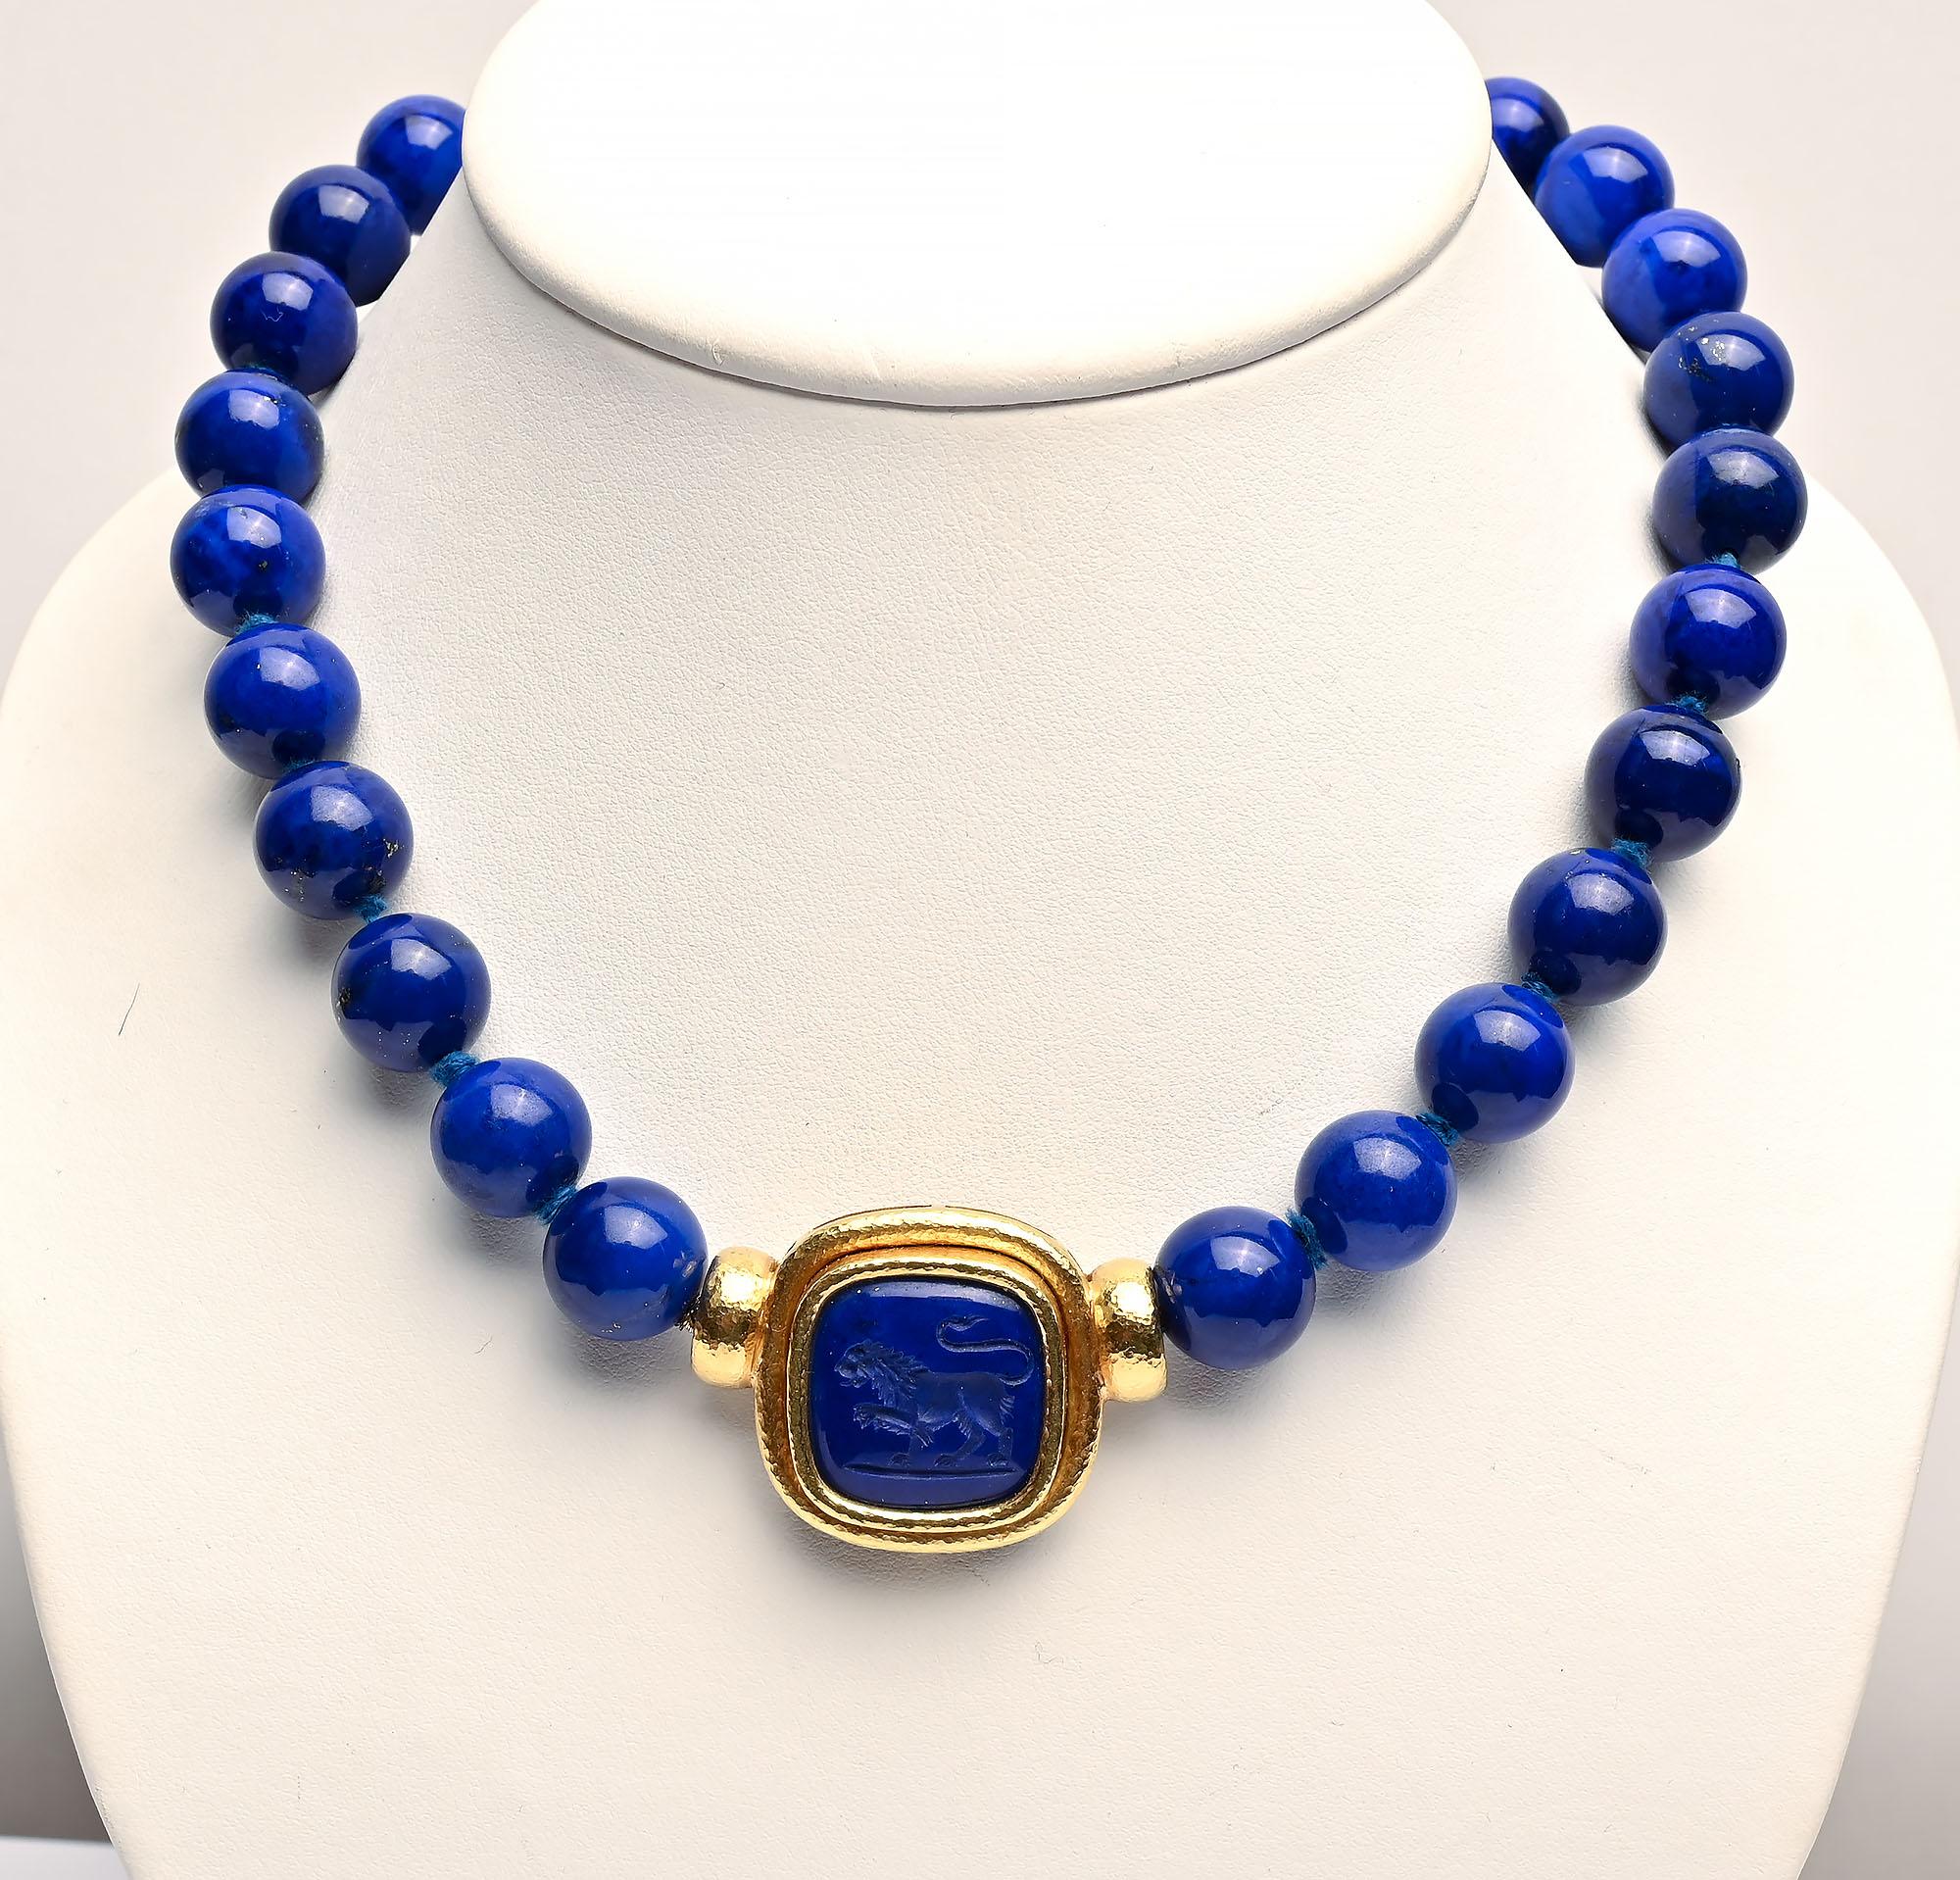 Atemberaubende Elizabeth Locke  Halskette mit brillant gefärbten Lapislazuli-Perlen, die etwa 12,5 mm messen. . Die Schließe ist ein Medaillon mit einem Löwen. Er kann mit anderen Locke-Anhängern ausgetauscht werden. Die Halskette misst 18 Zoll